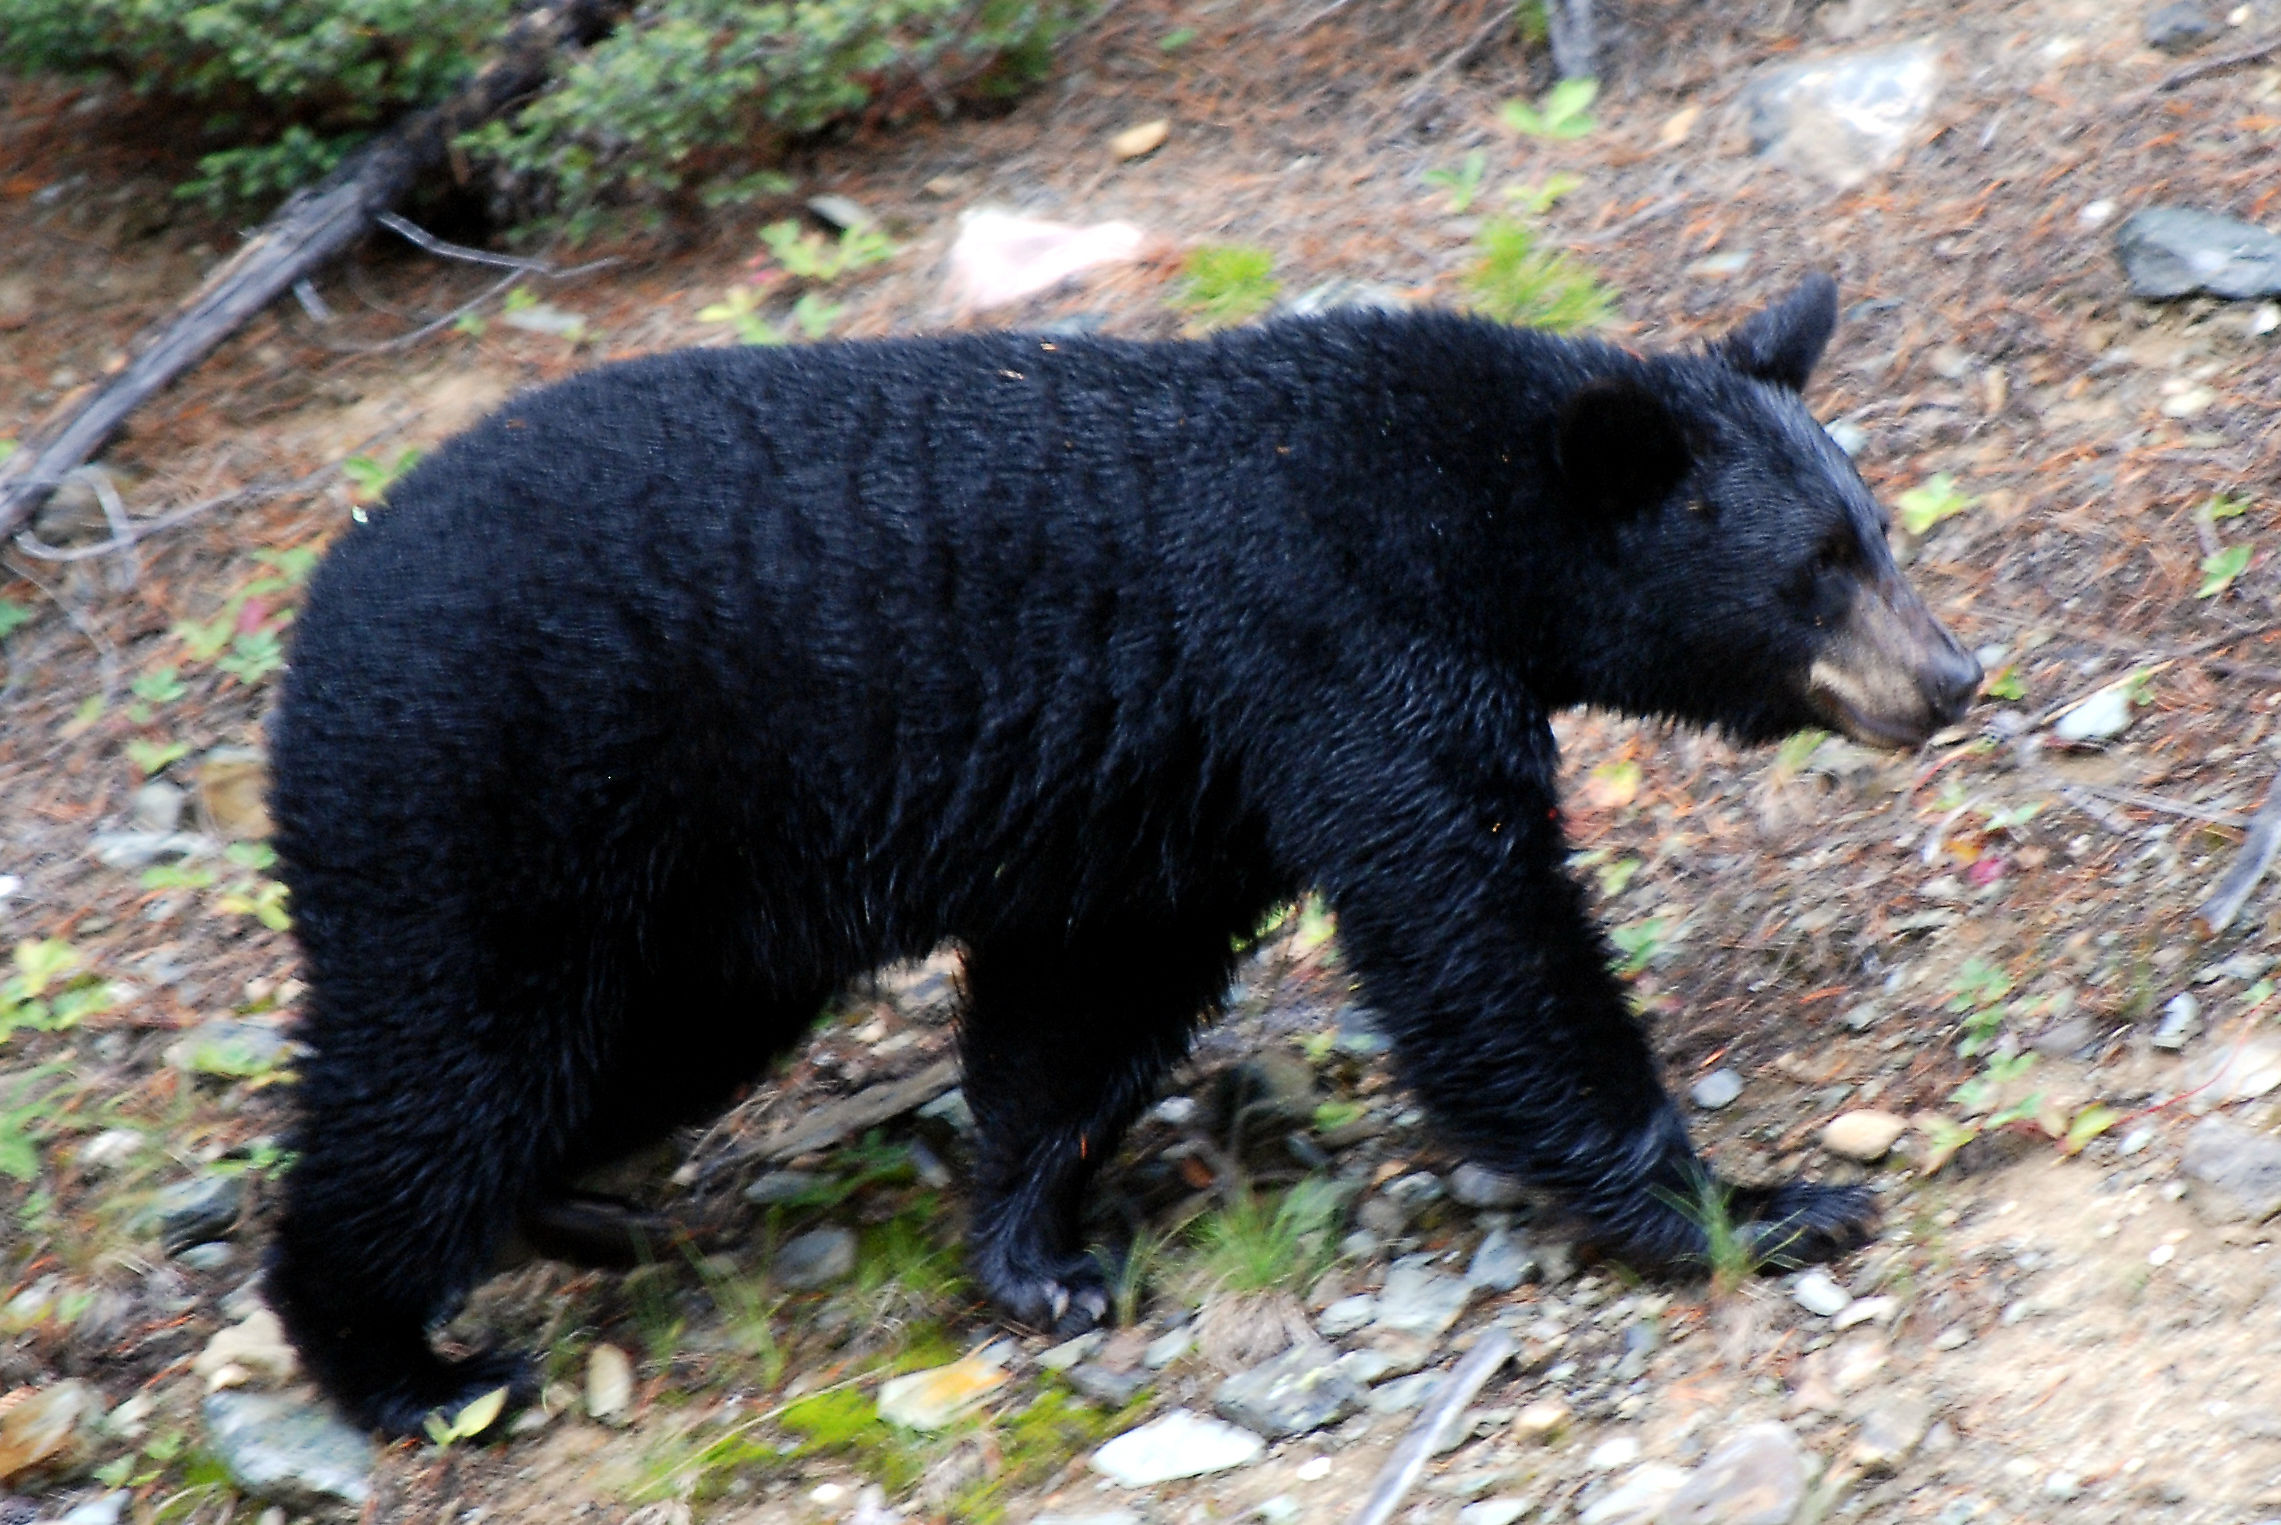 (ویدئو) ببینید چطور این خرس سیاه به خانه حمله می کند و از داخل یخچال دزدی می کند!